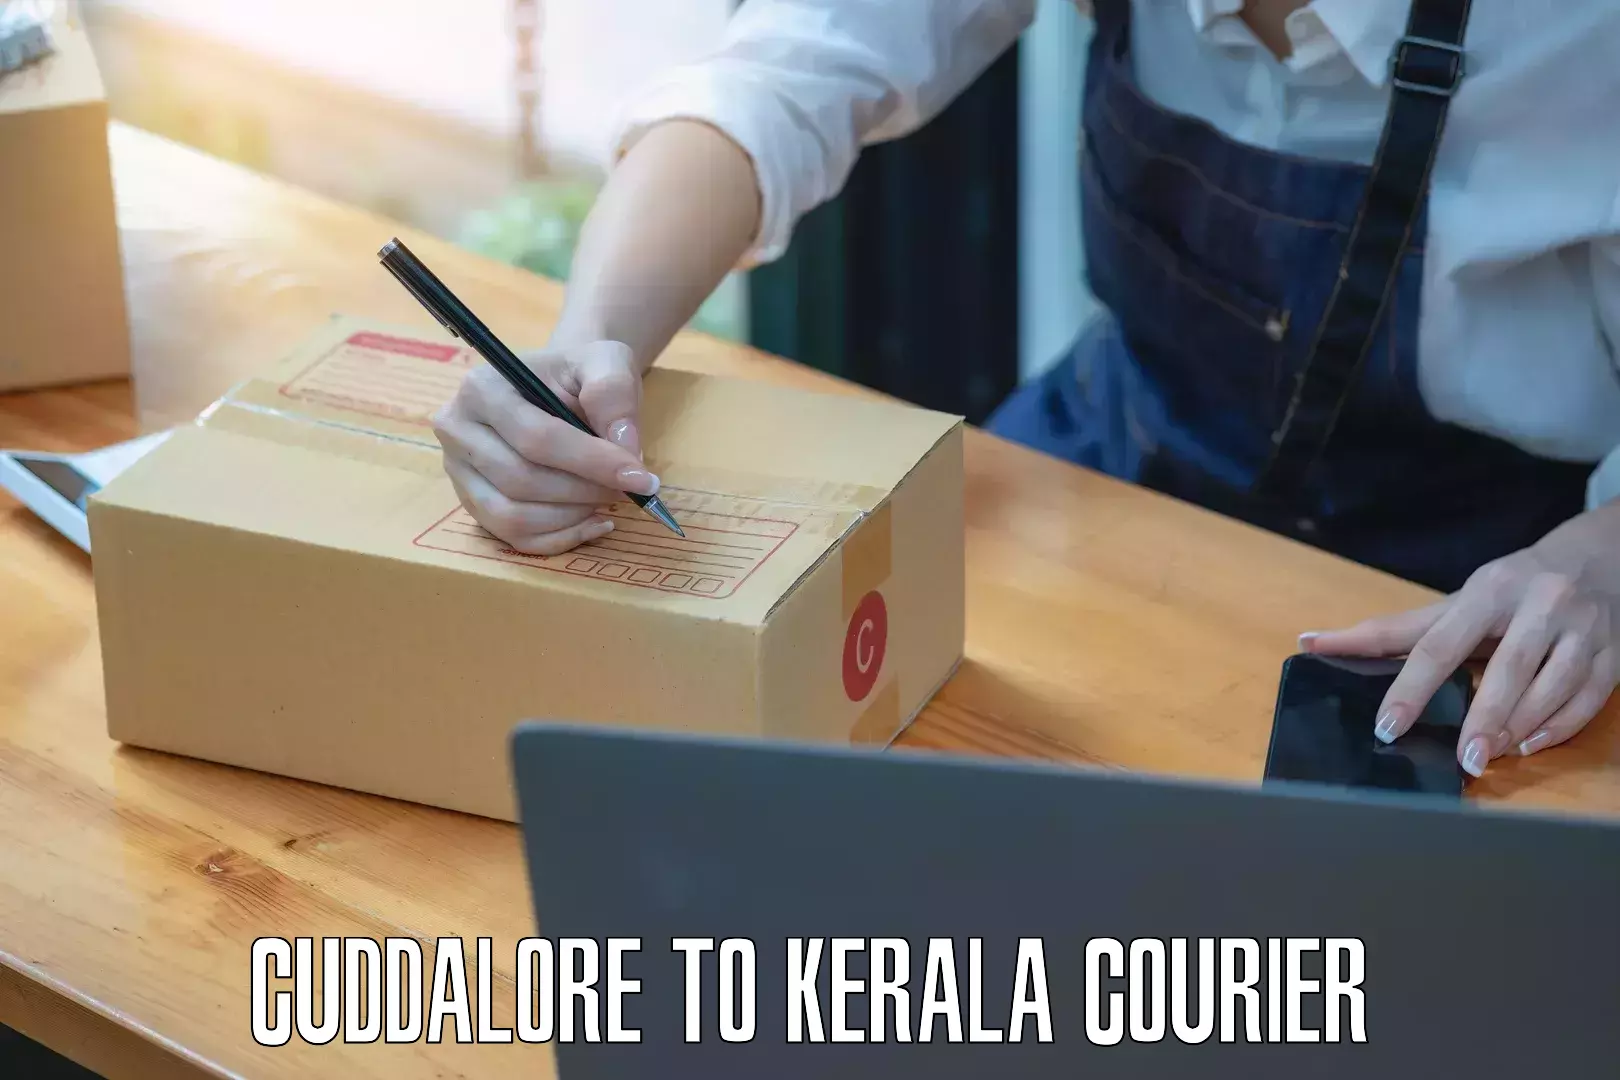 Door-to-door freight service Cuddalore to Kerala